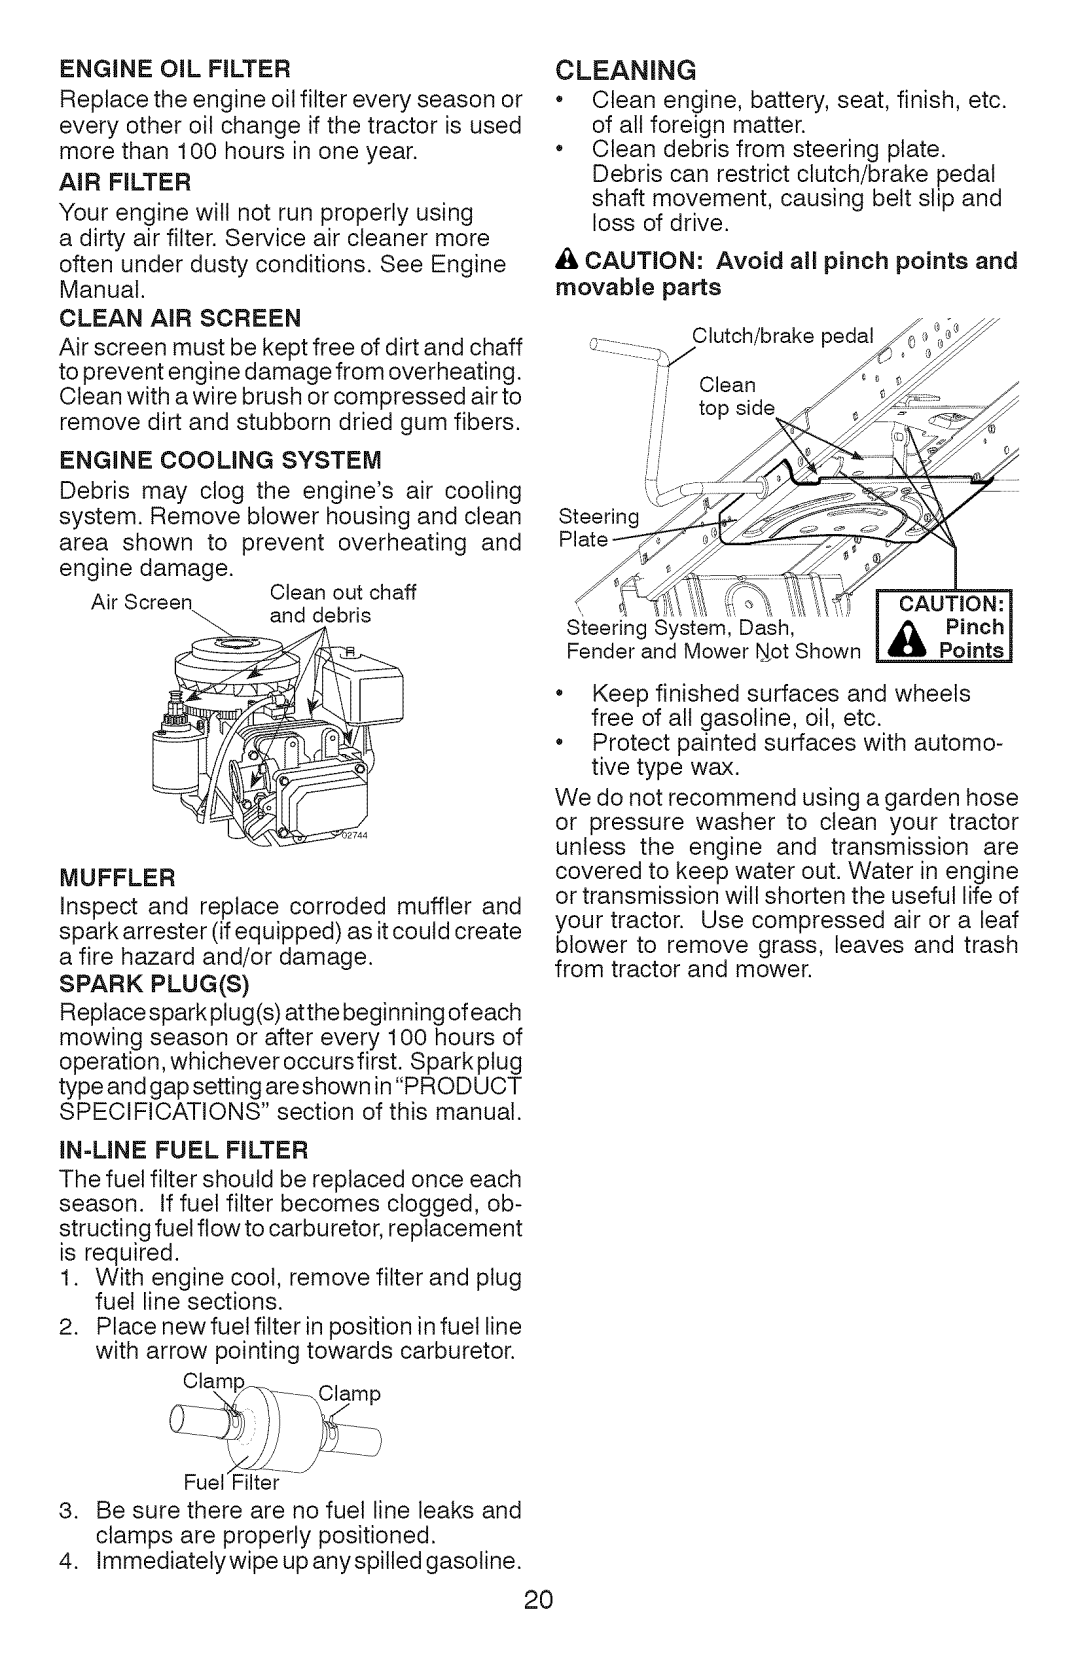 Craftsman 917.289072 Engine Oil Filter, Air Filter, Engine Cooling System, engine damage, Muffler, In=Line Fuel Filter 